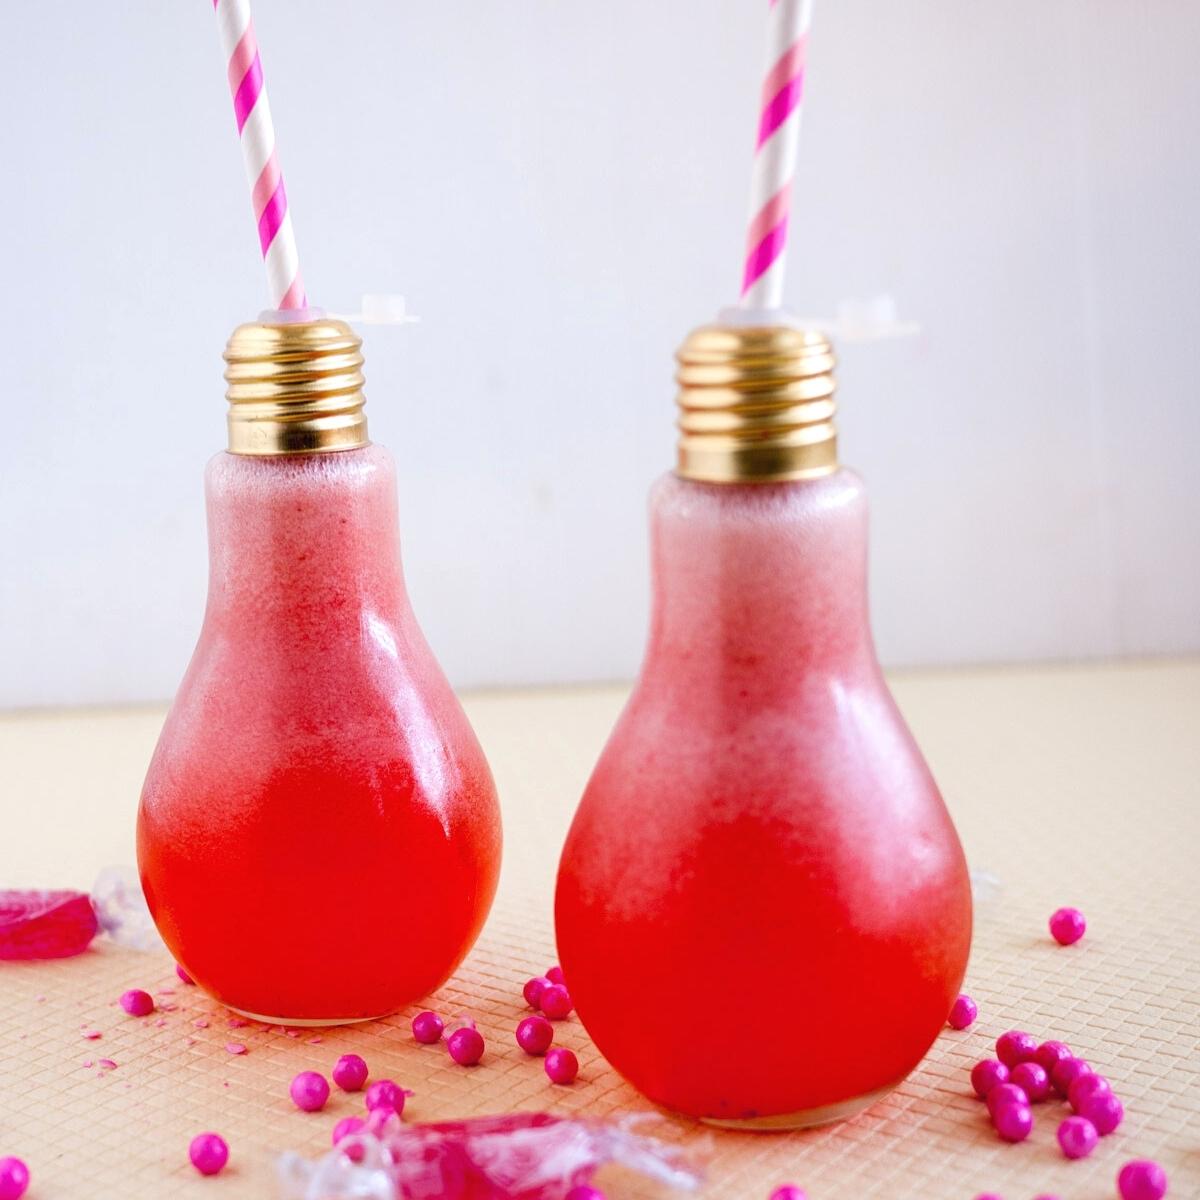 Two lightbulb shaped glasses with strawberry lemonade